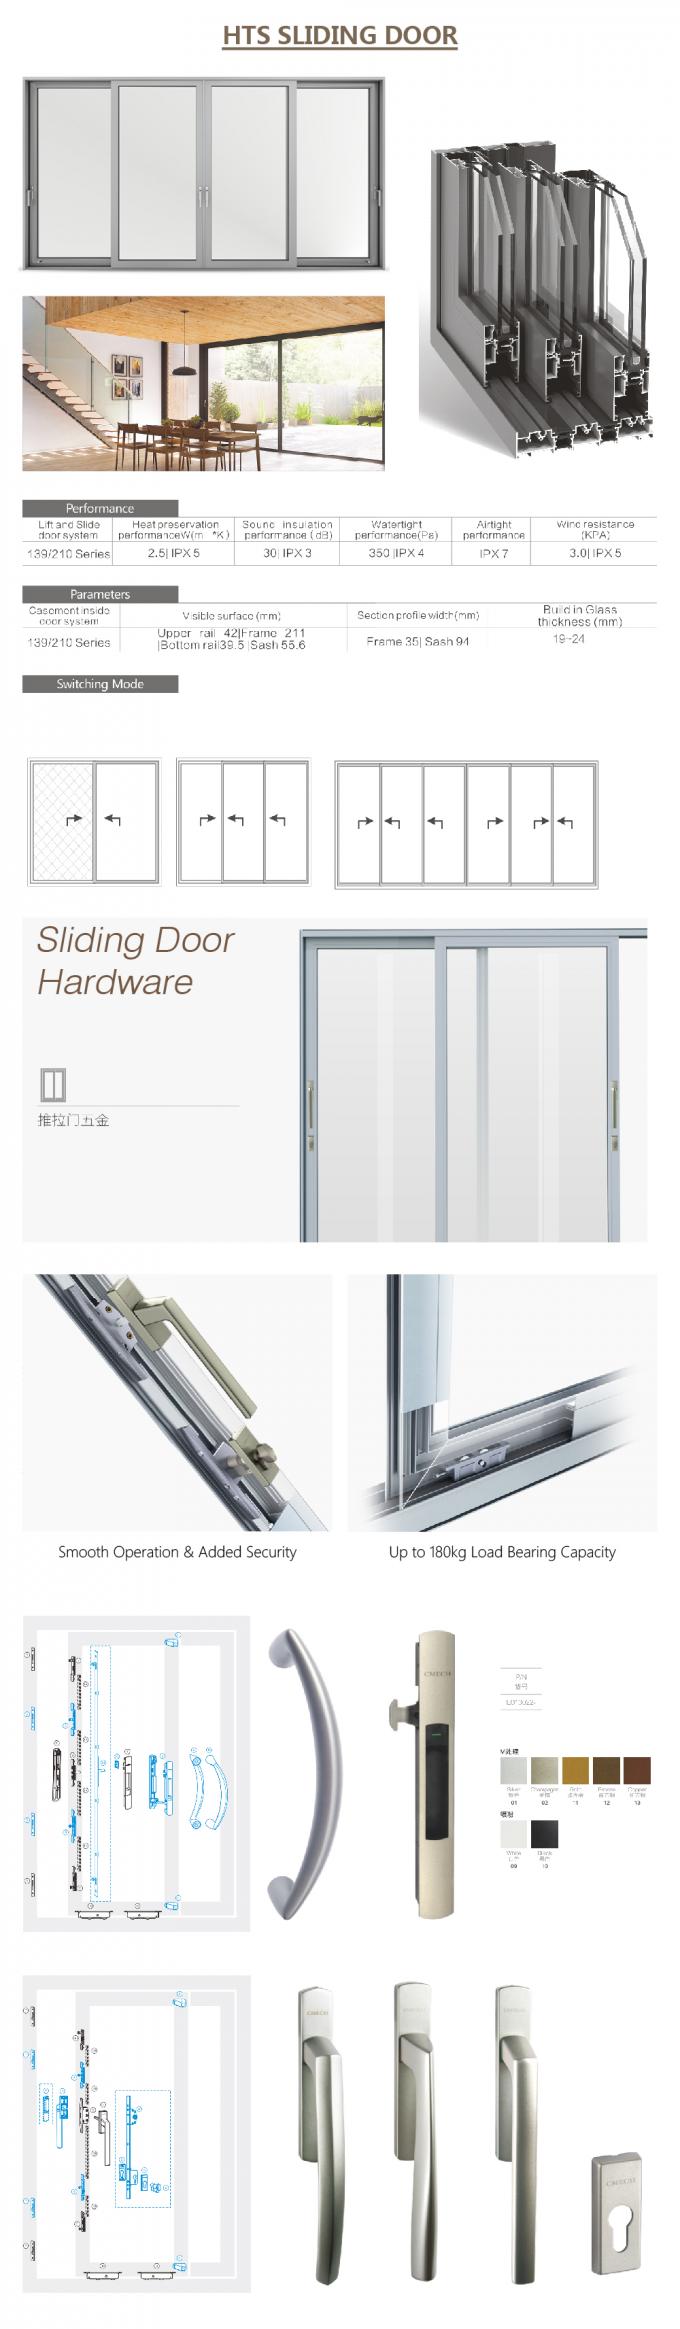 συρόμενη πόρτα τηλεχειρισμού, αυτόματη συρόμενη πόρτα - πιό κοντά, συρόμενη πόρτα κλειδαριών πορτών, λεπτομέρειες πορτών ολίσθησης doorAluminium ολίσθησης σιδήρου